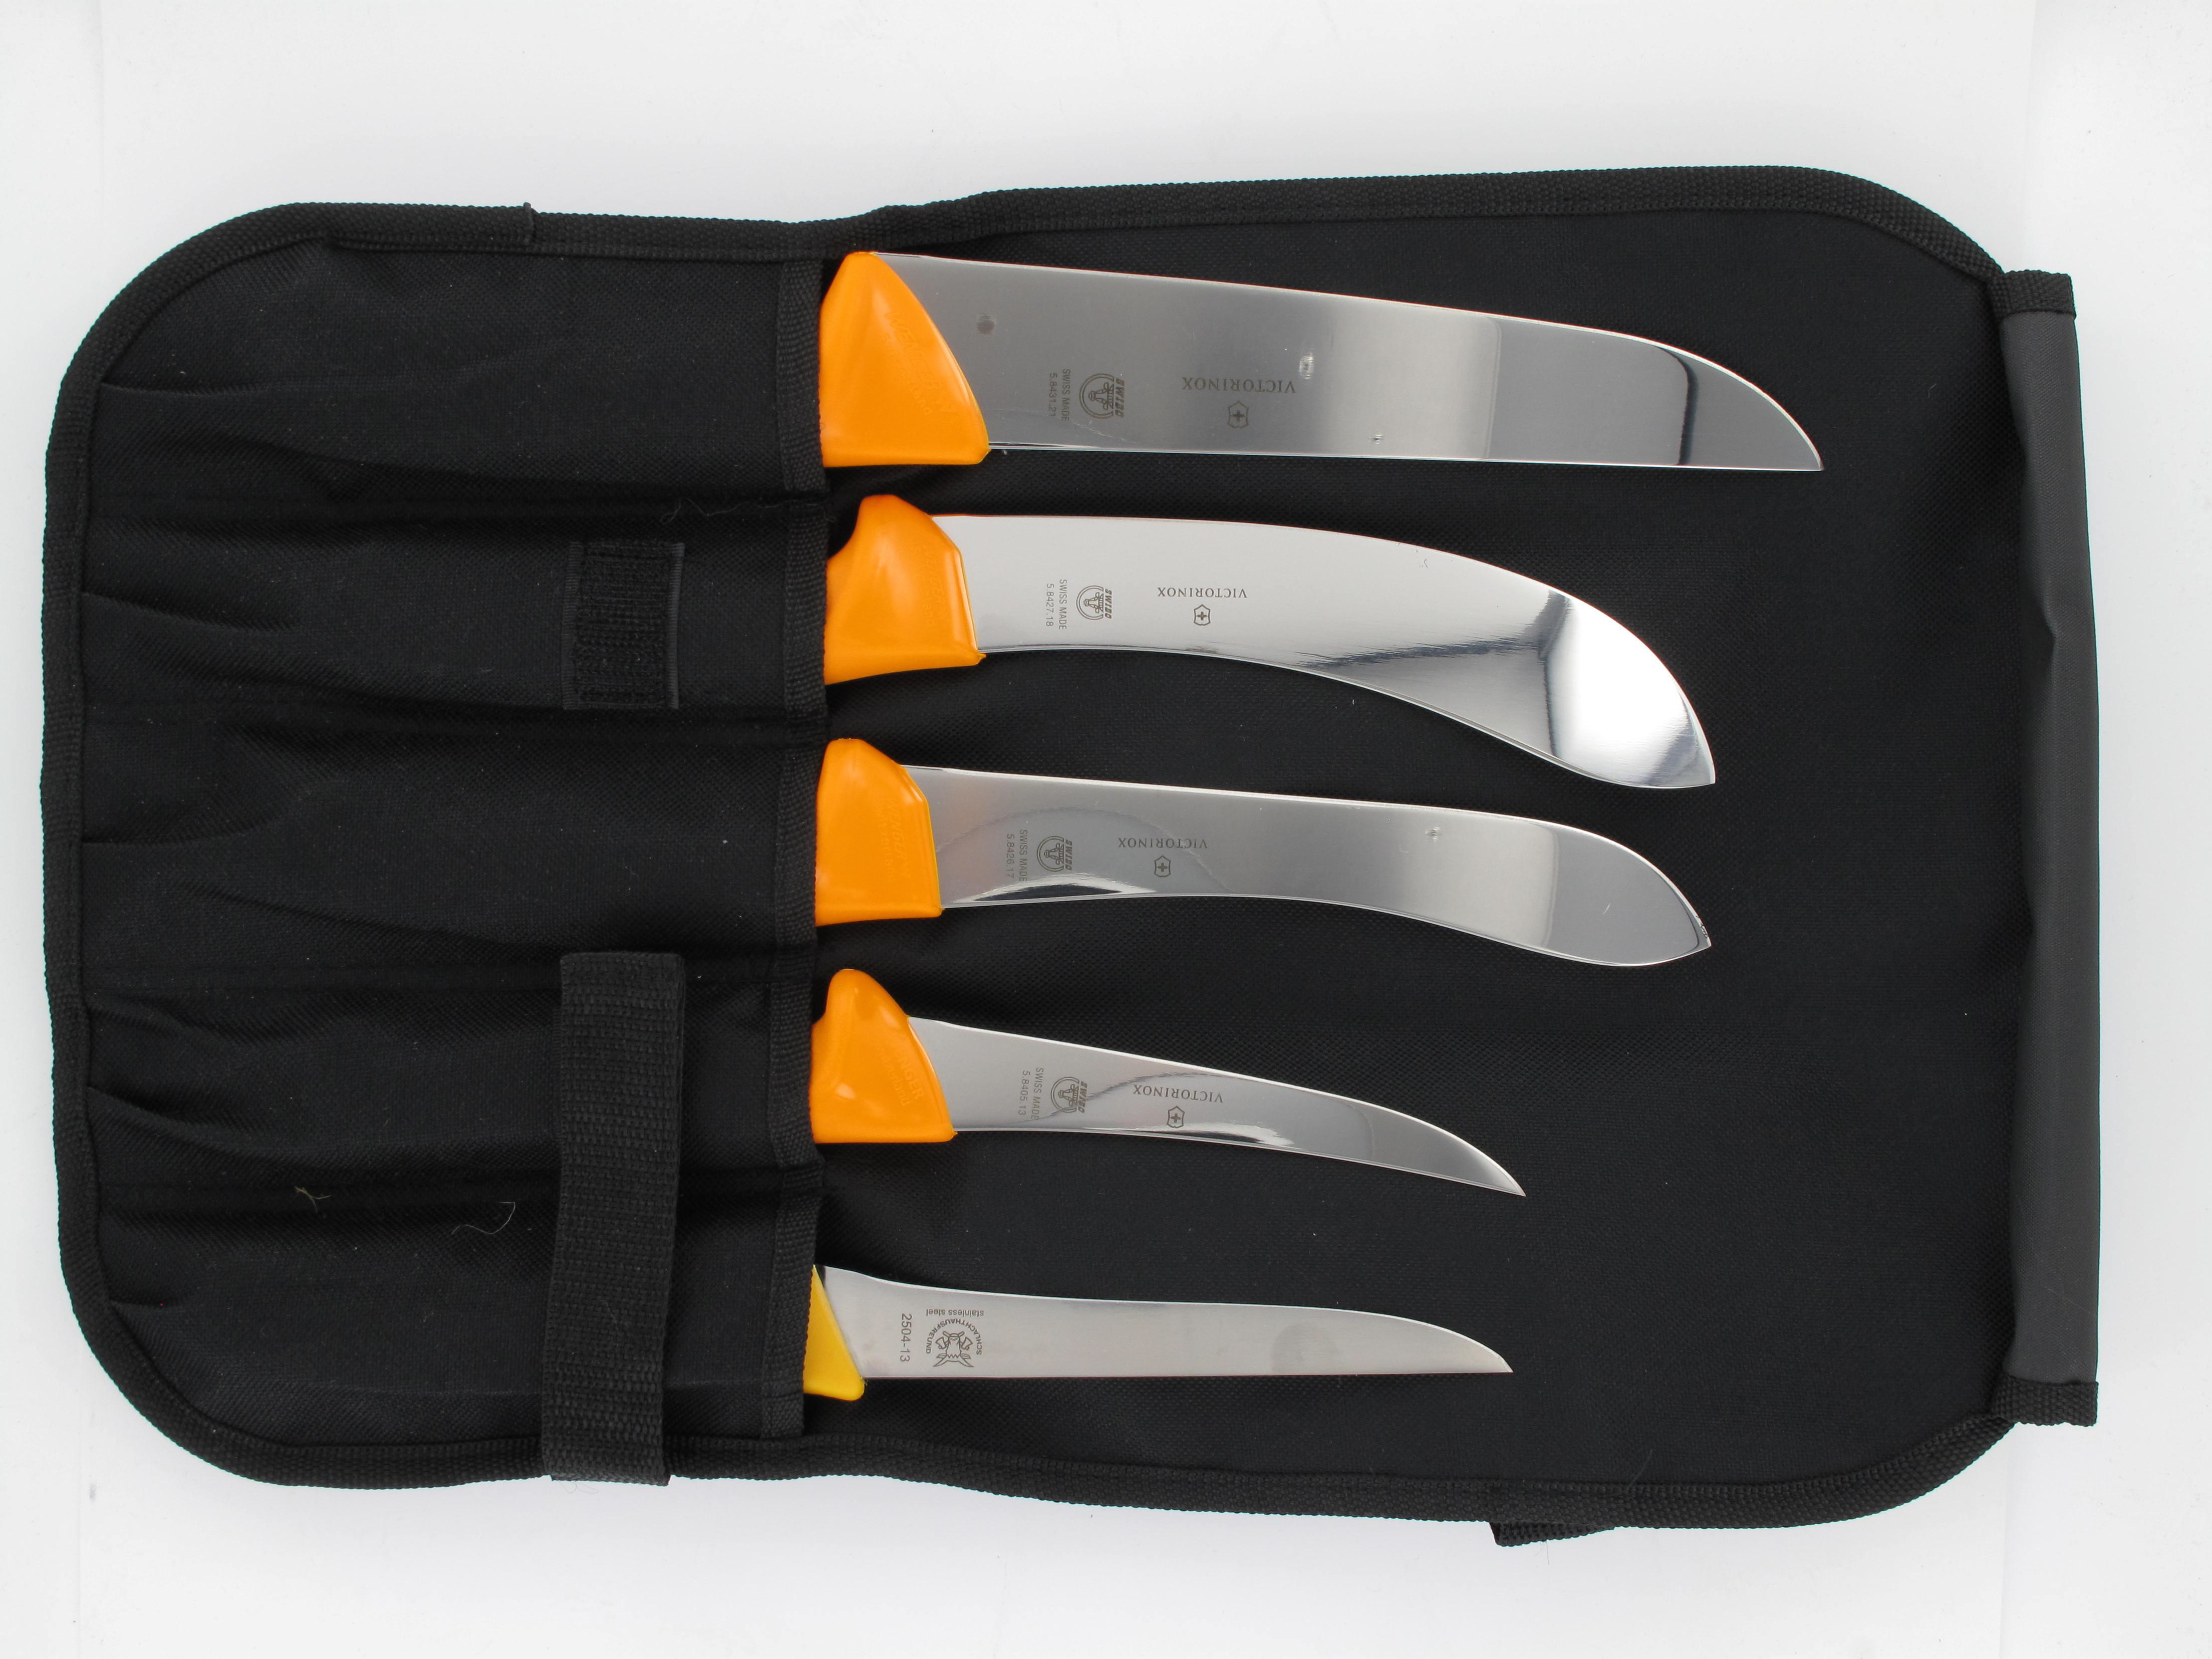 Messerrolle, schwarz, für 5 Messer